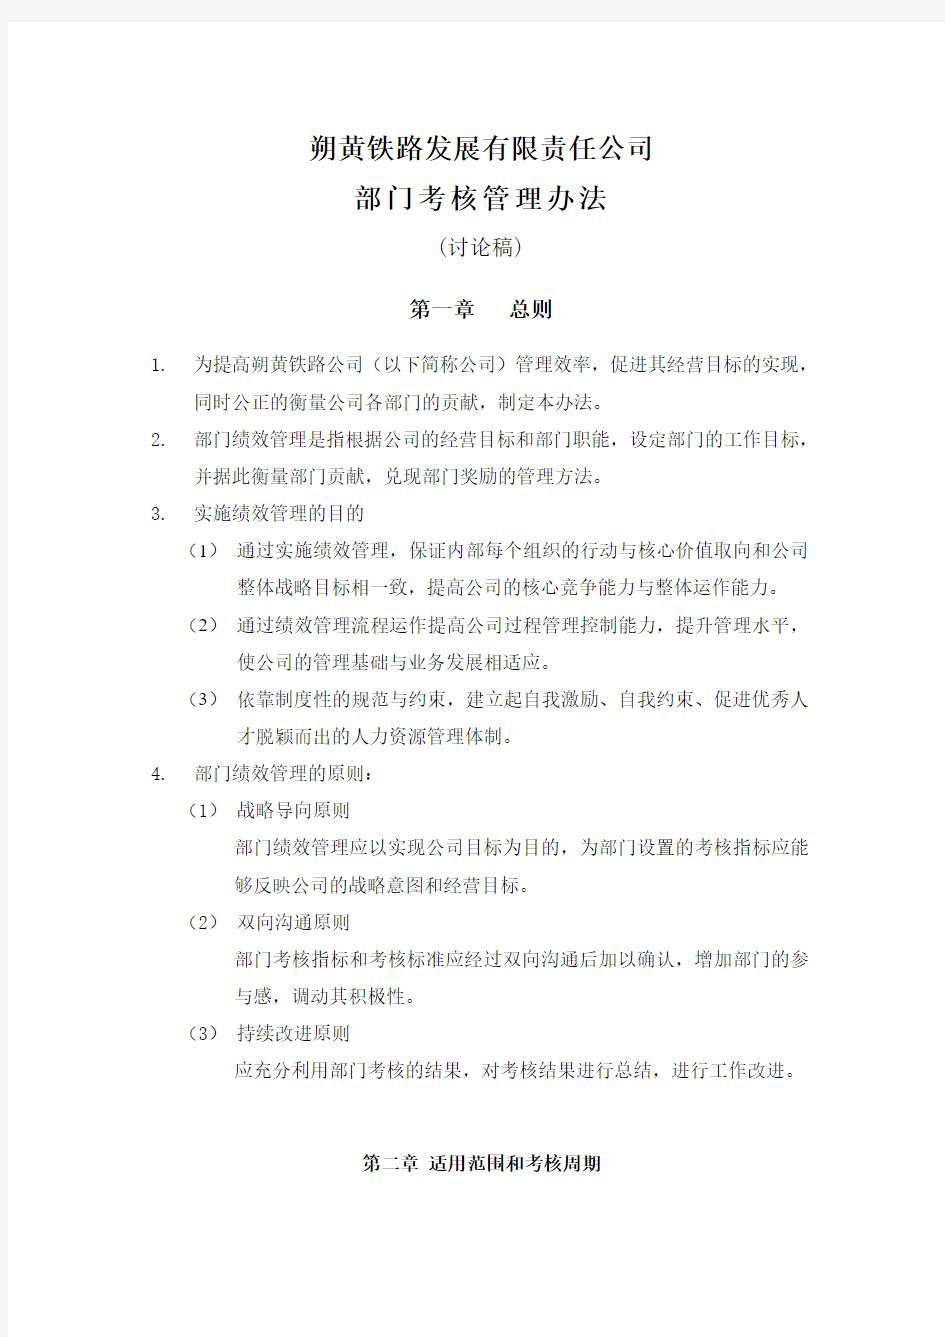 (002)朴智—神华朔黄铁路公司—部门绩效考核管理办法0815